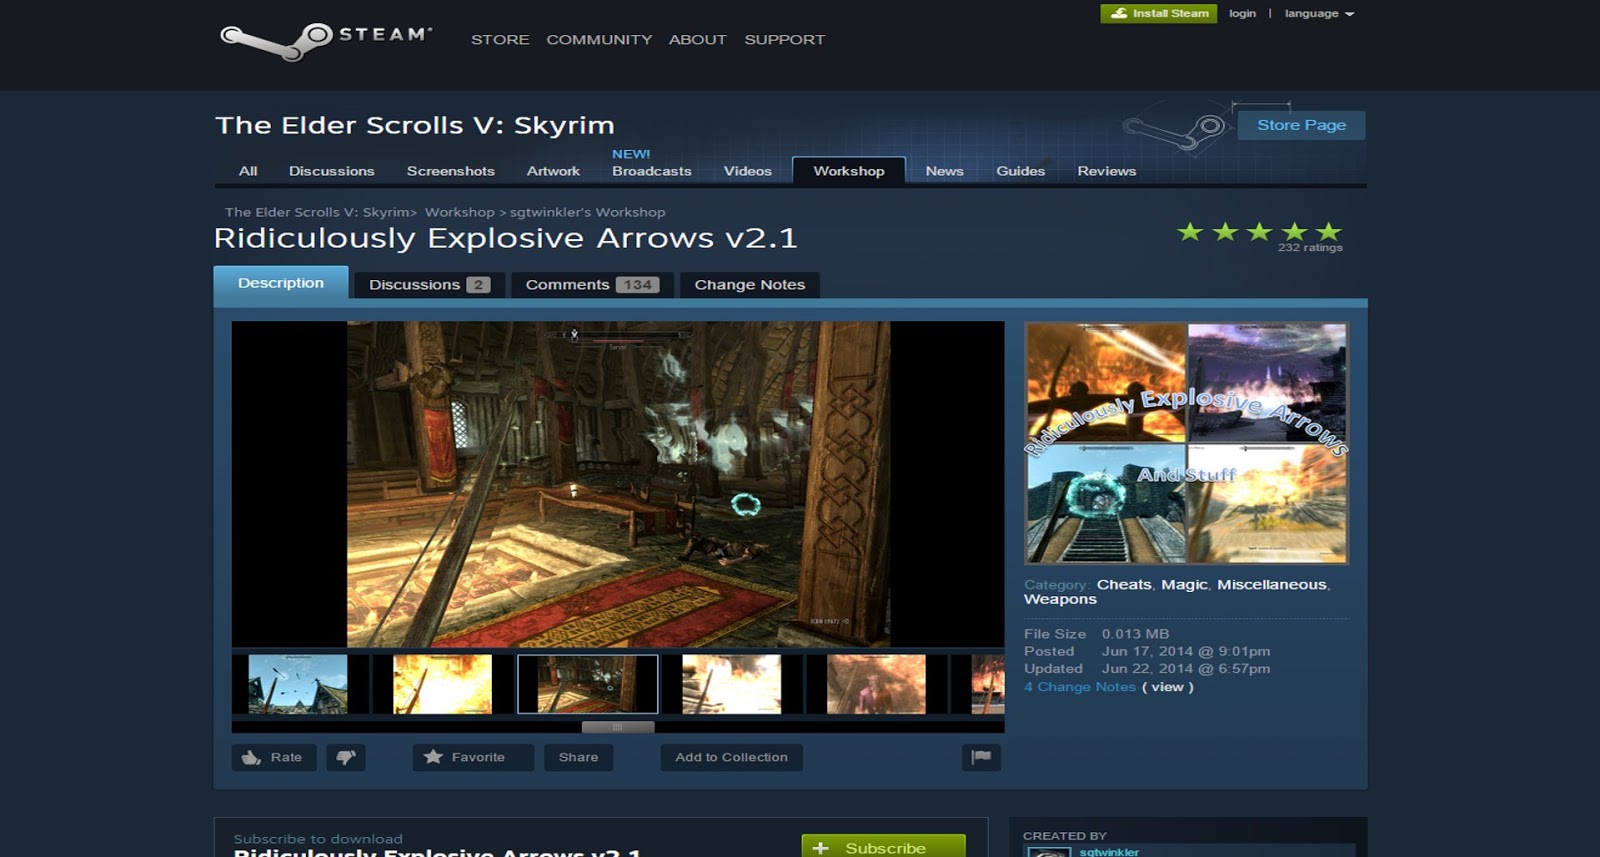 Mattwins Best Skyrim Mods For Pc Steam Workshop And Nexus